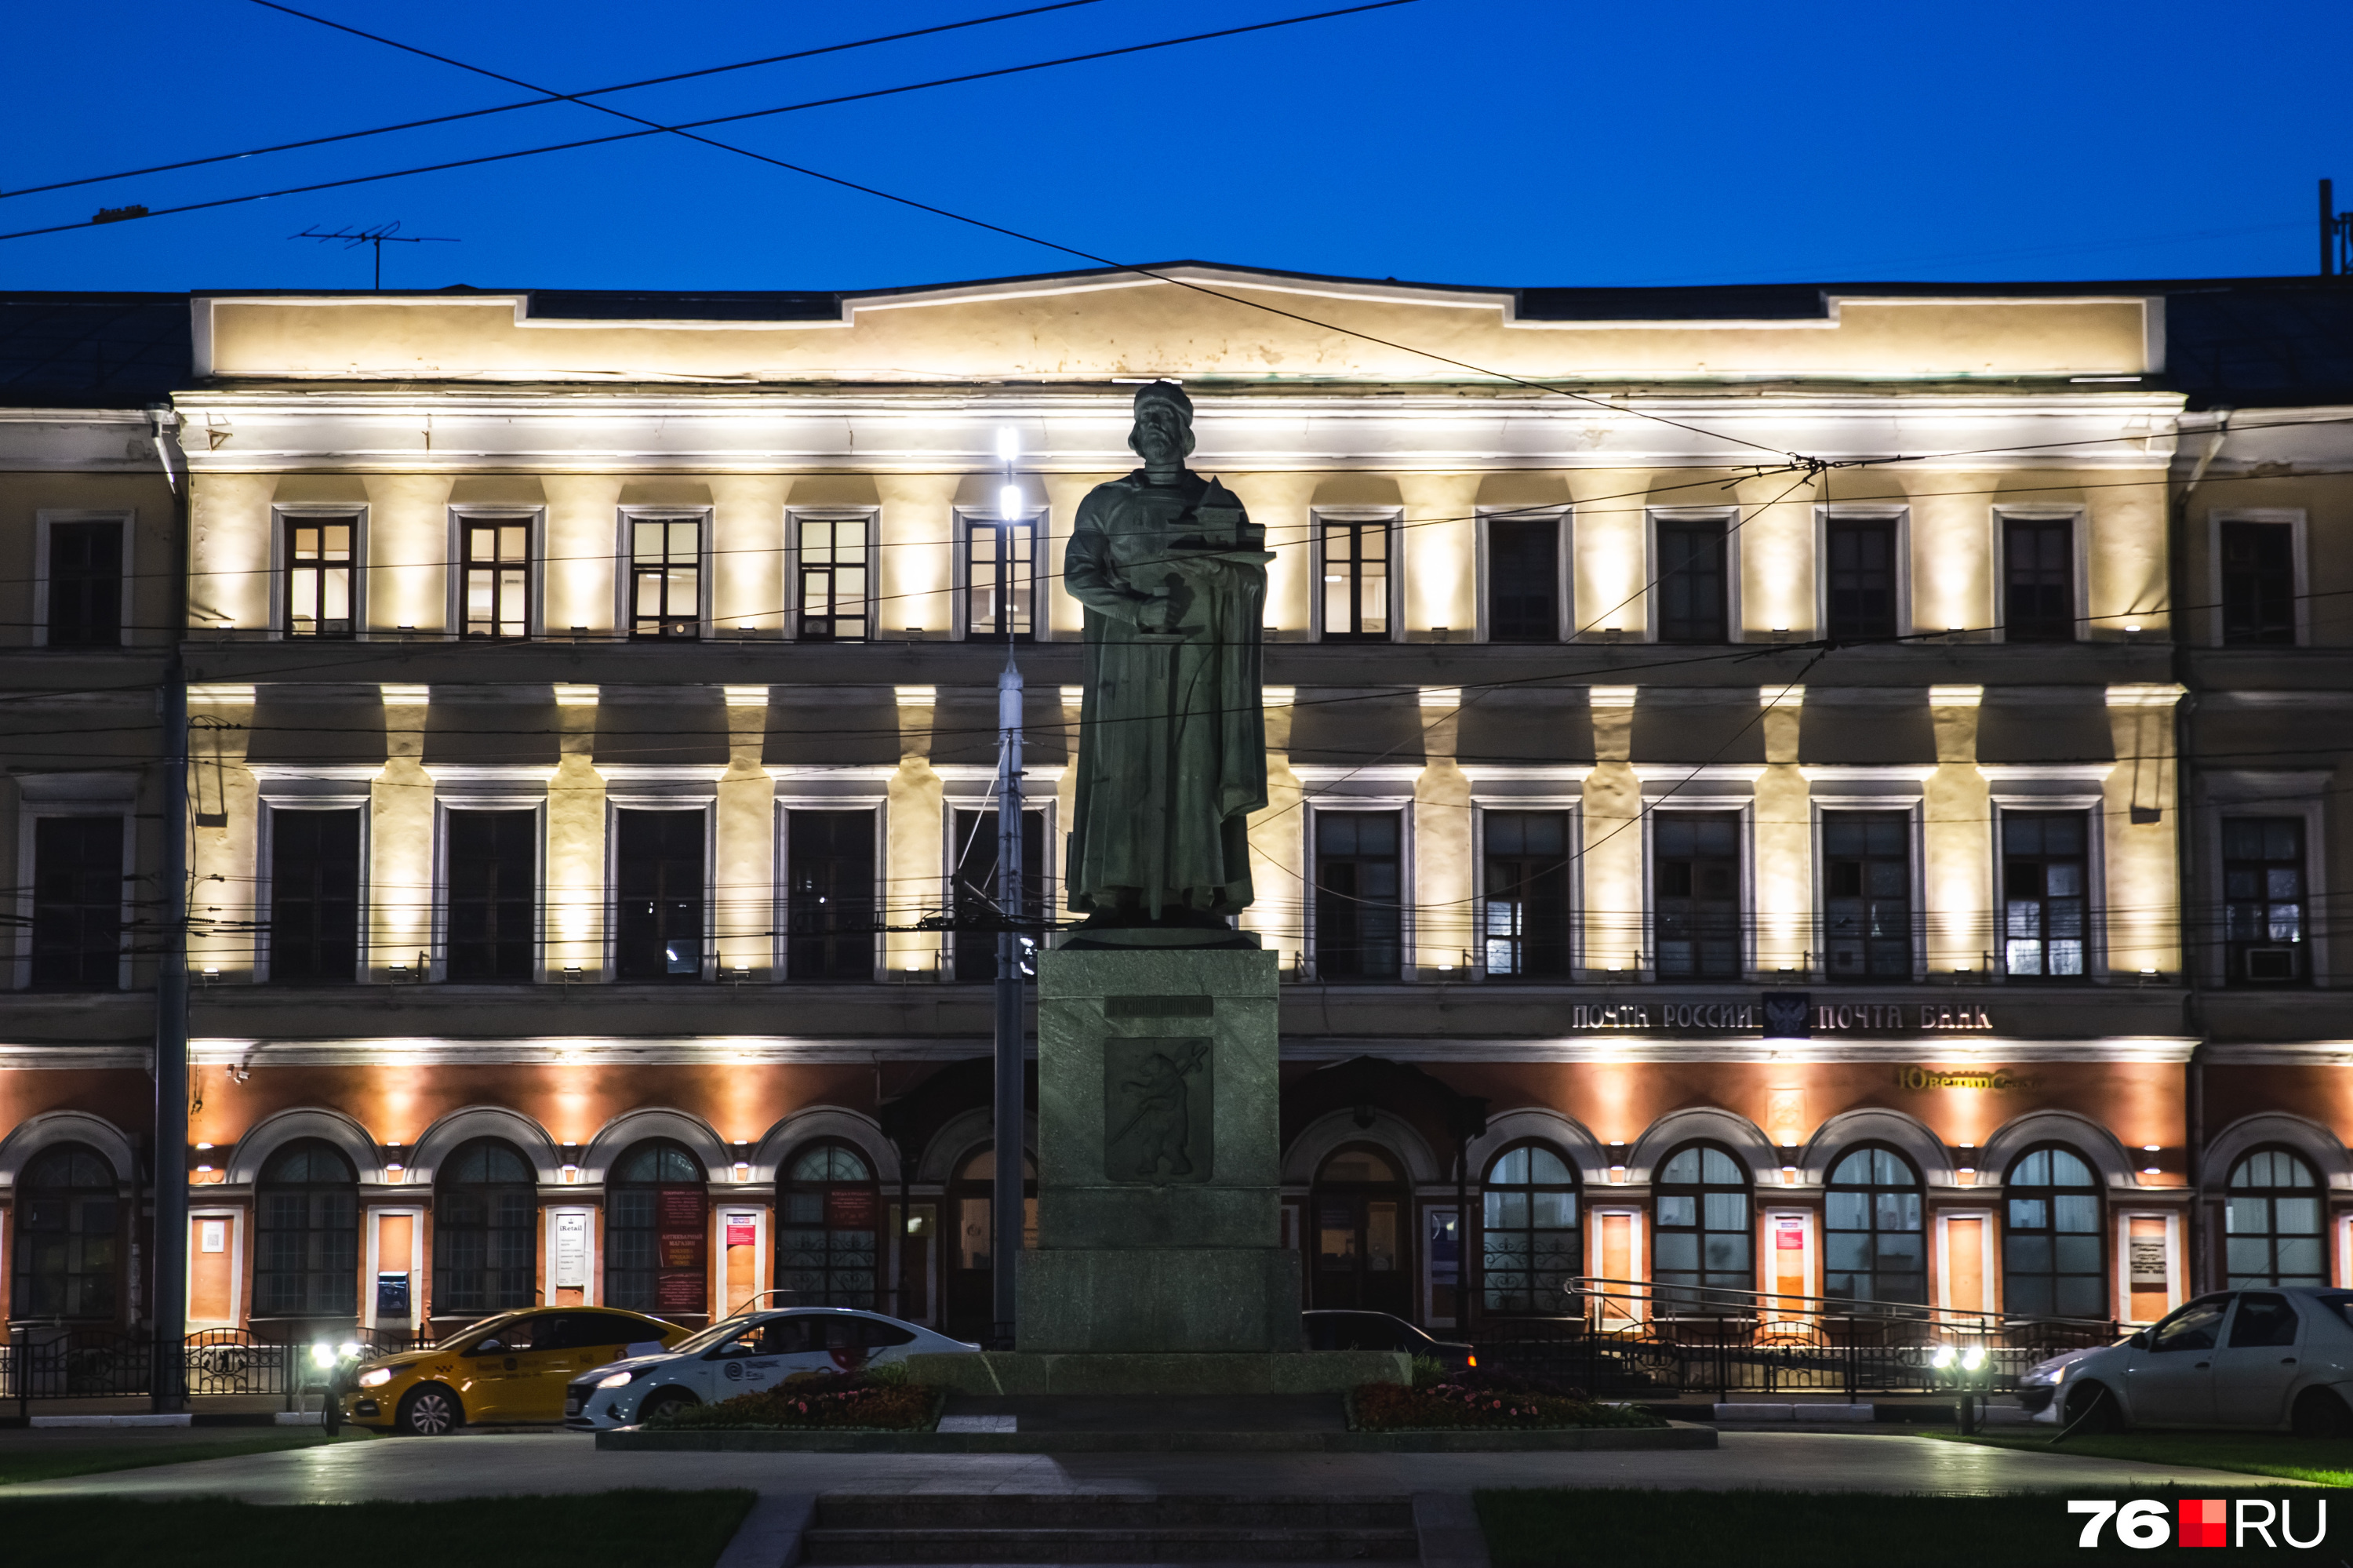 Подсветка исторического здания почтамта — идеальный фон для памятника основателю города